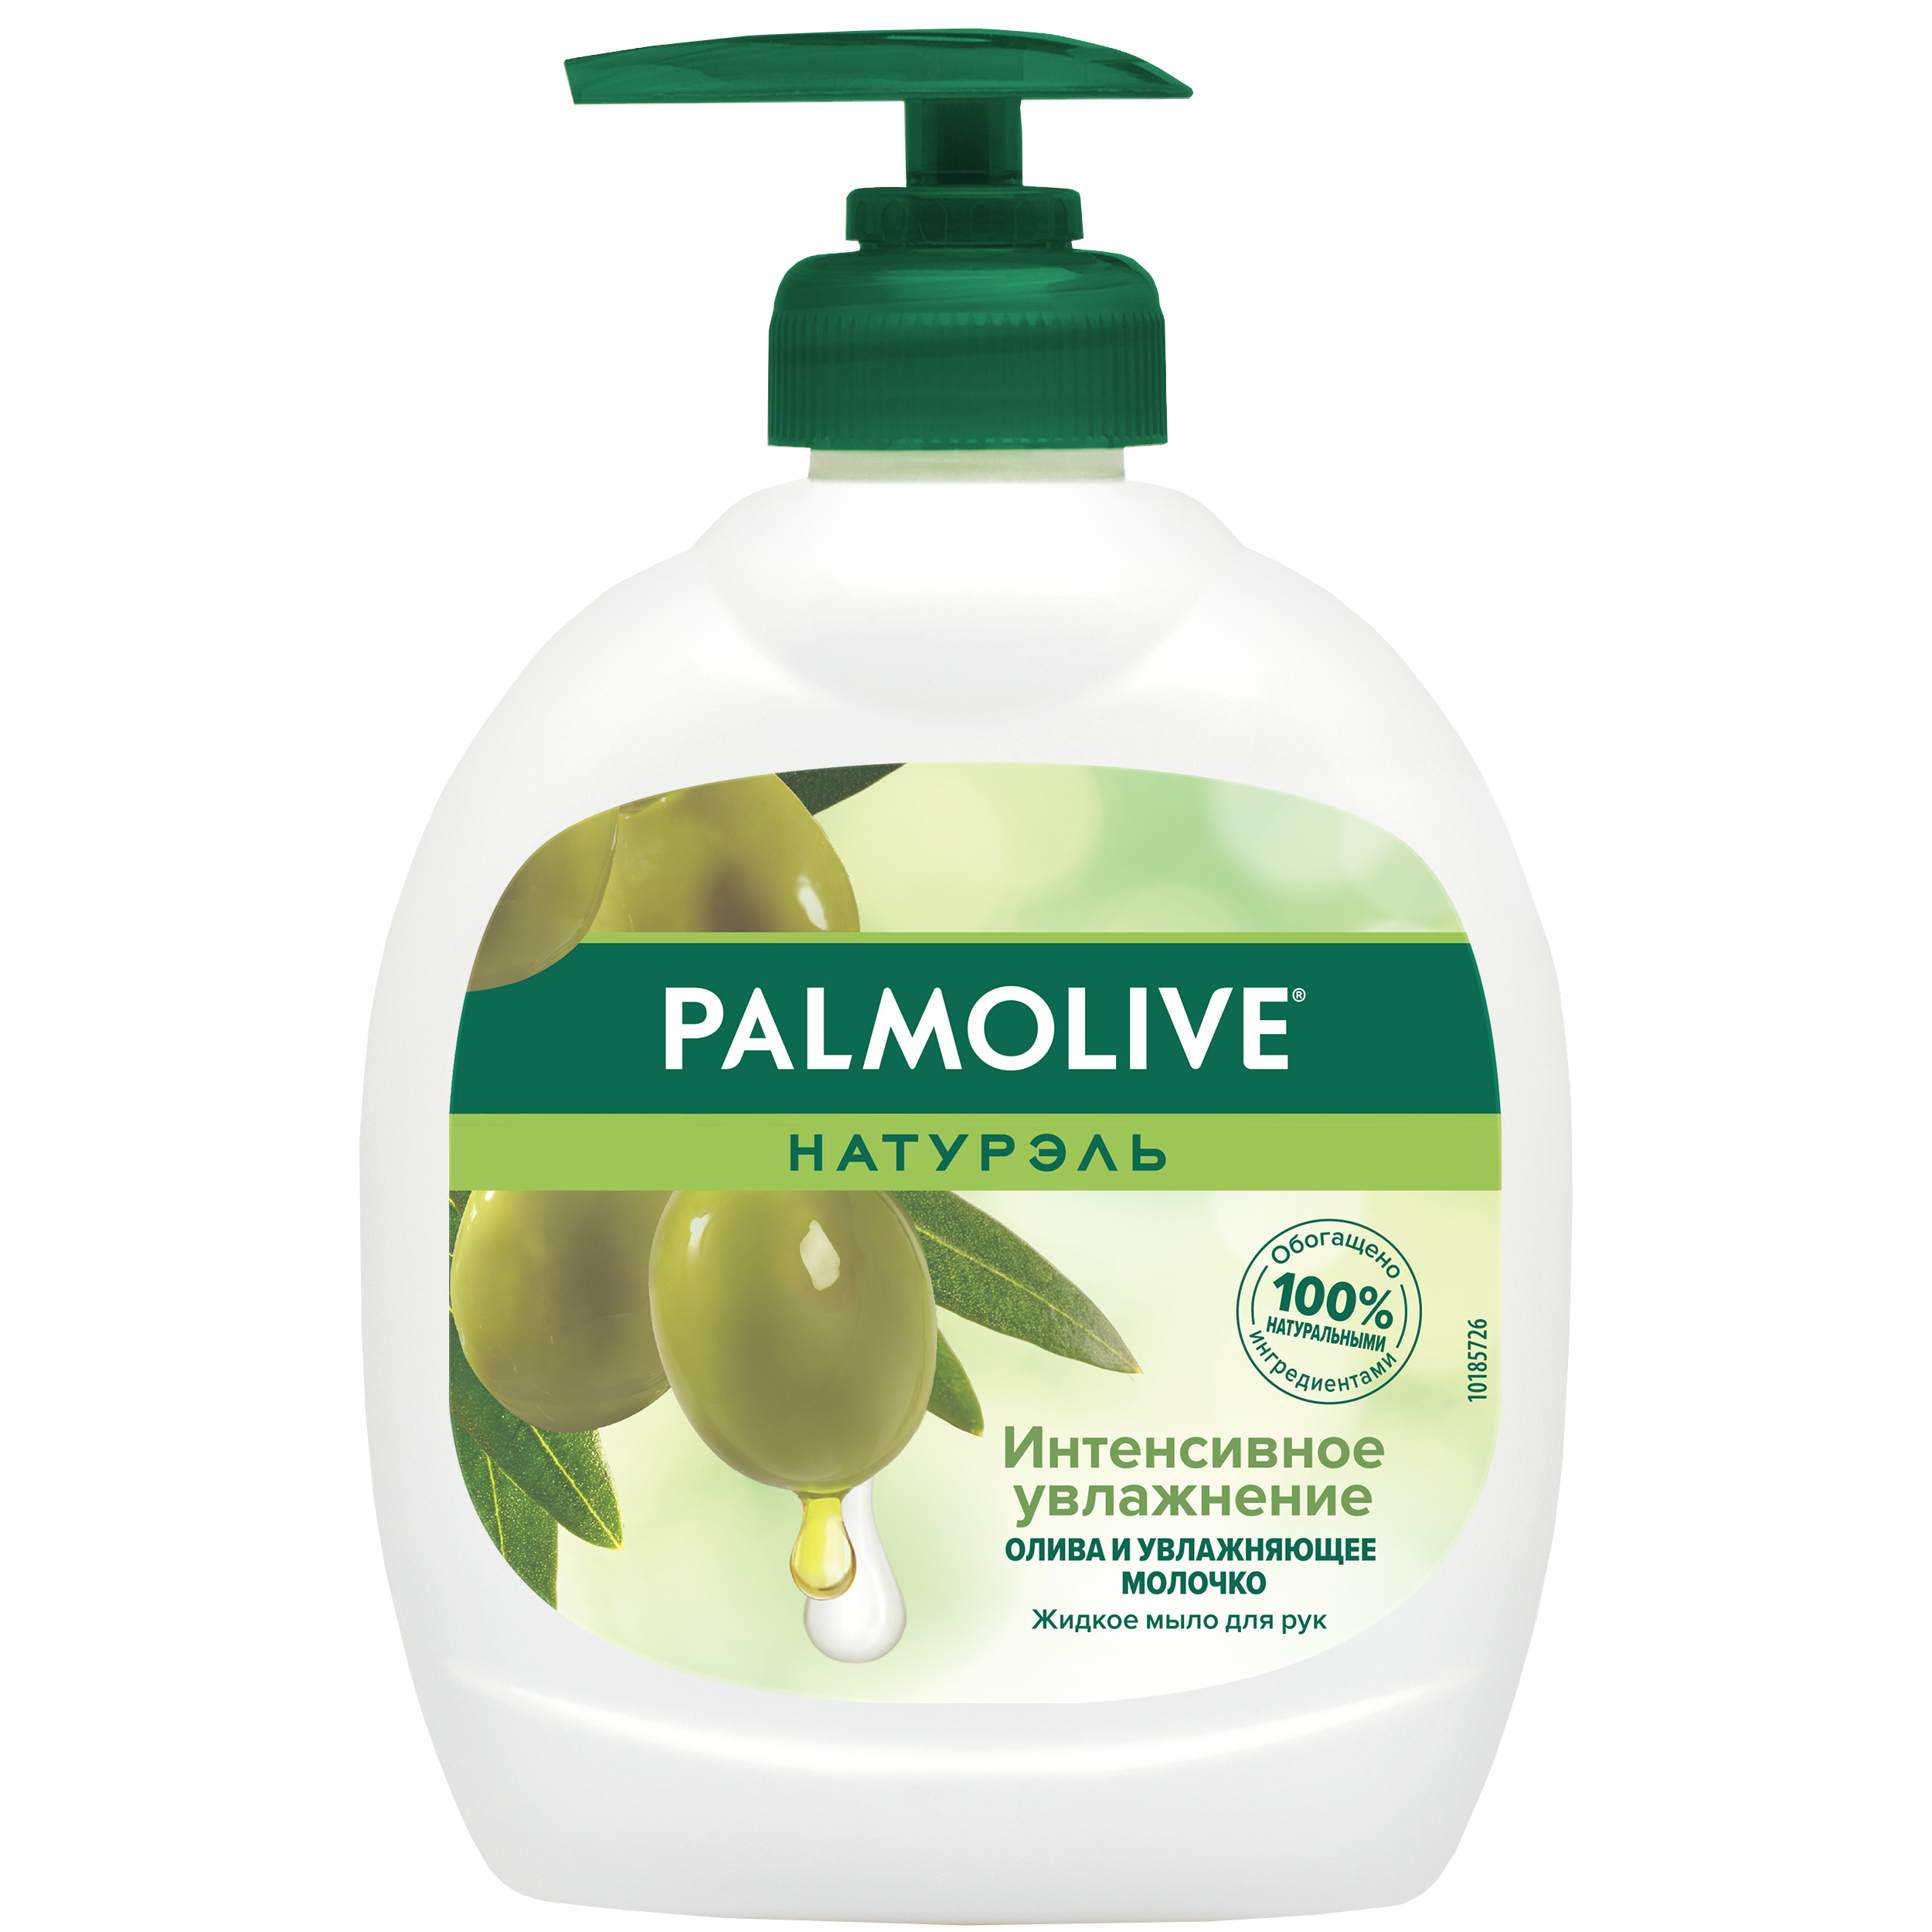 Мыло жидкое для рук Palmolive Интенсивное Увлажнение с увлажняющим молочком 300 мл косметическое мыло palmolive натурэль роскошная мягкость 90гр